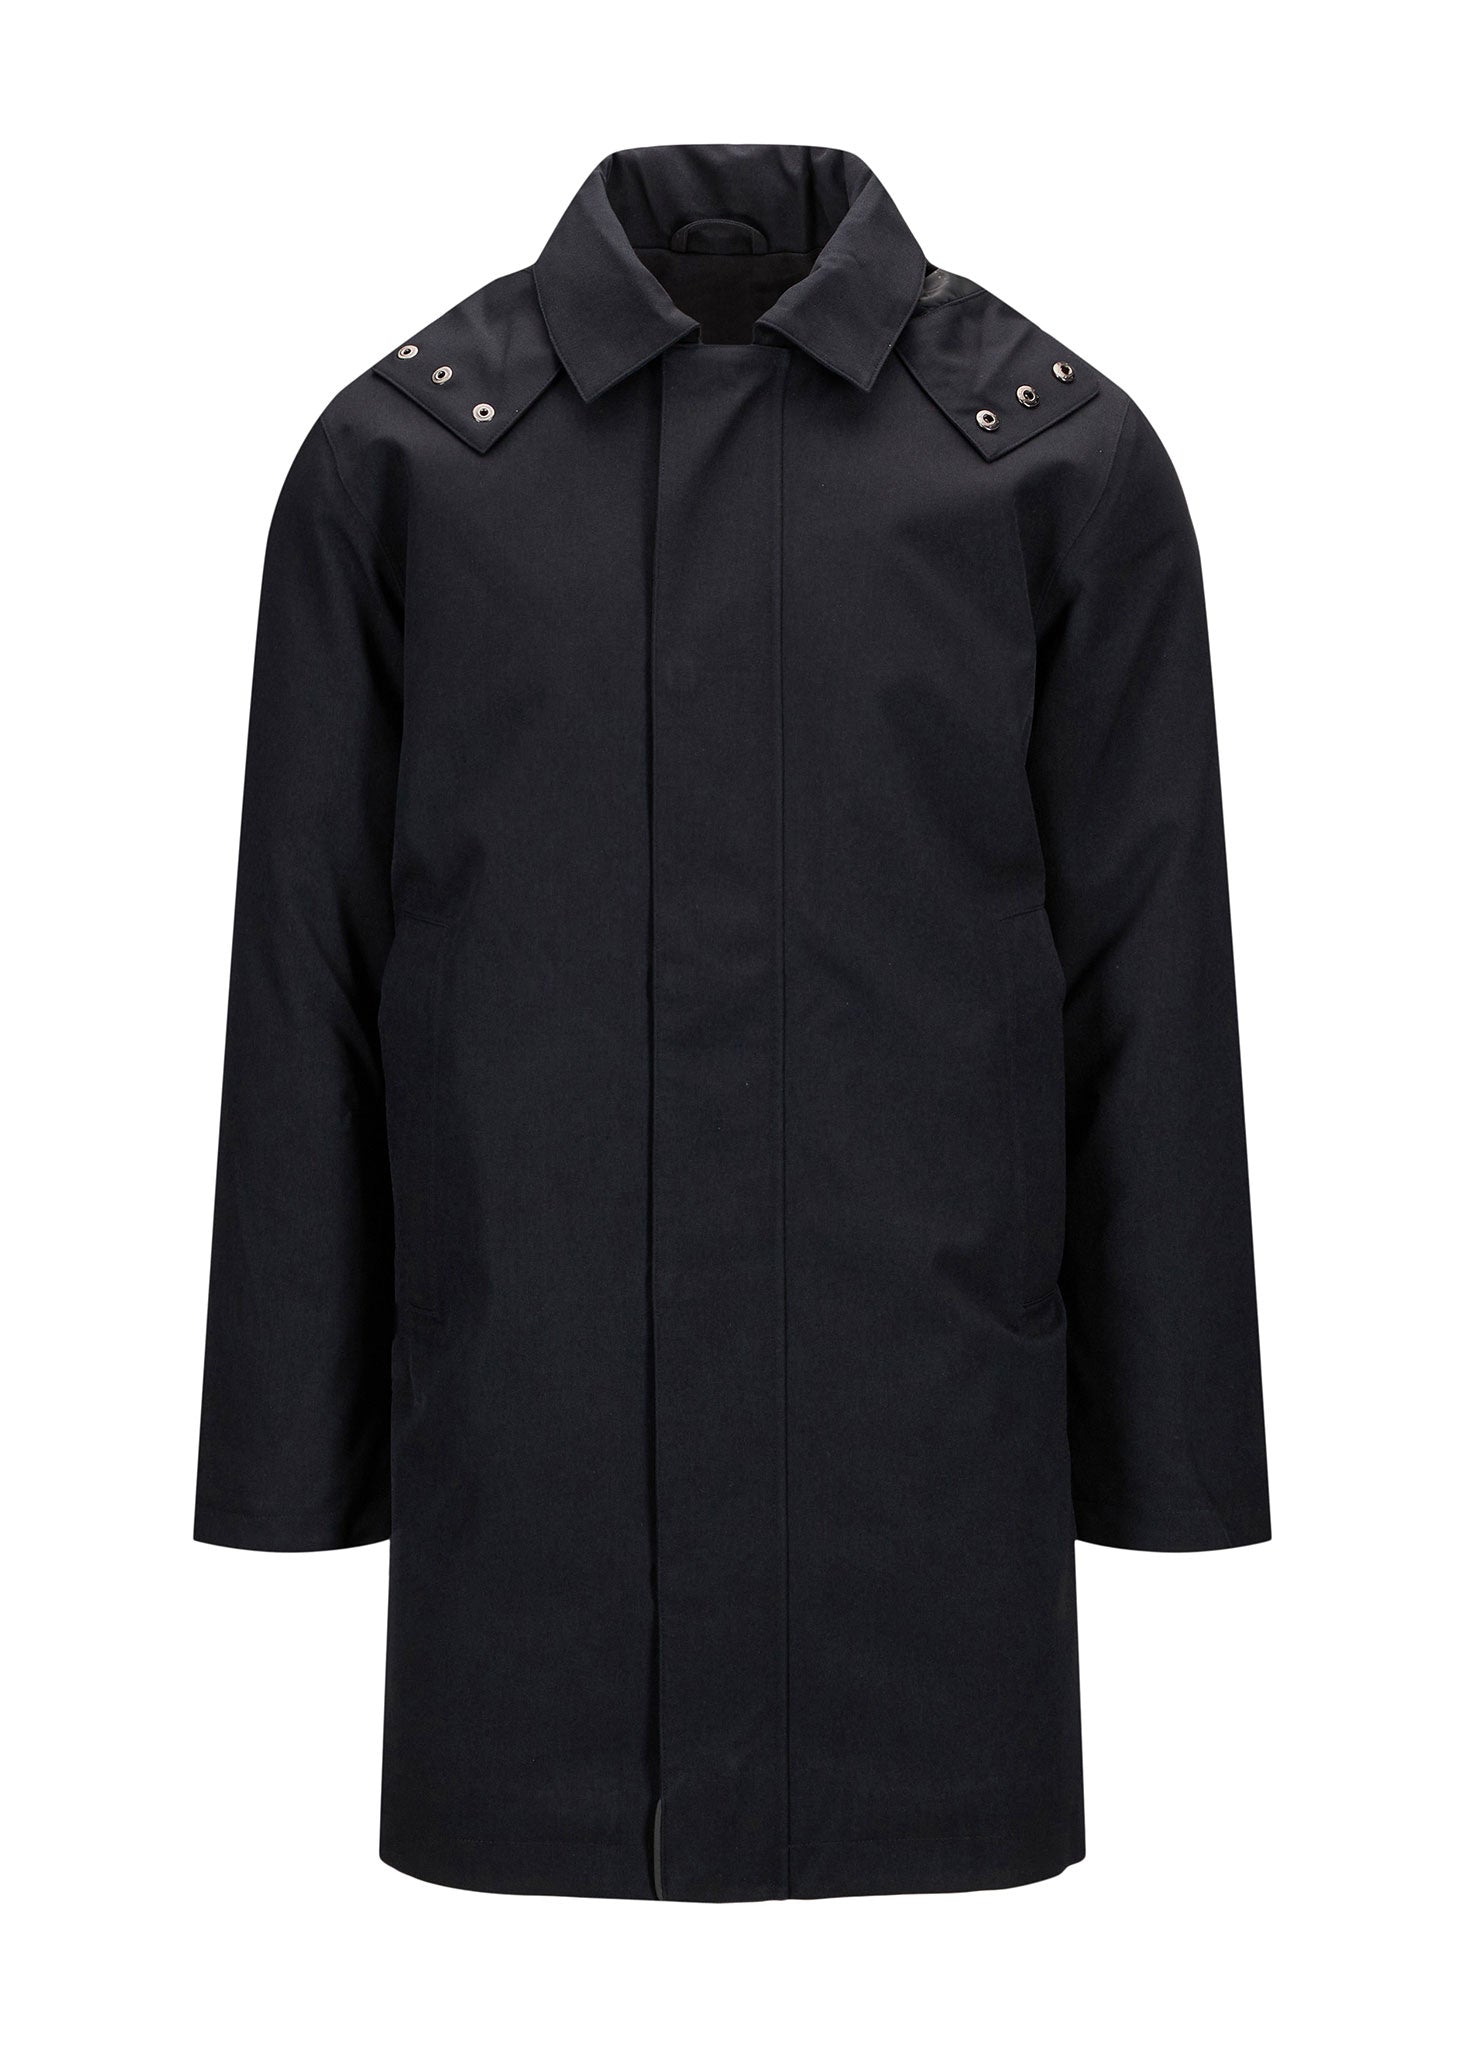 BRGN Vestavind Coat Coats 095 New Black